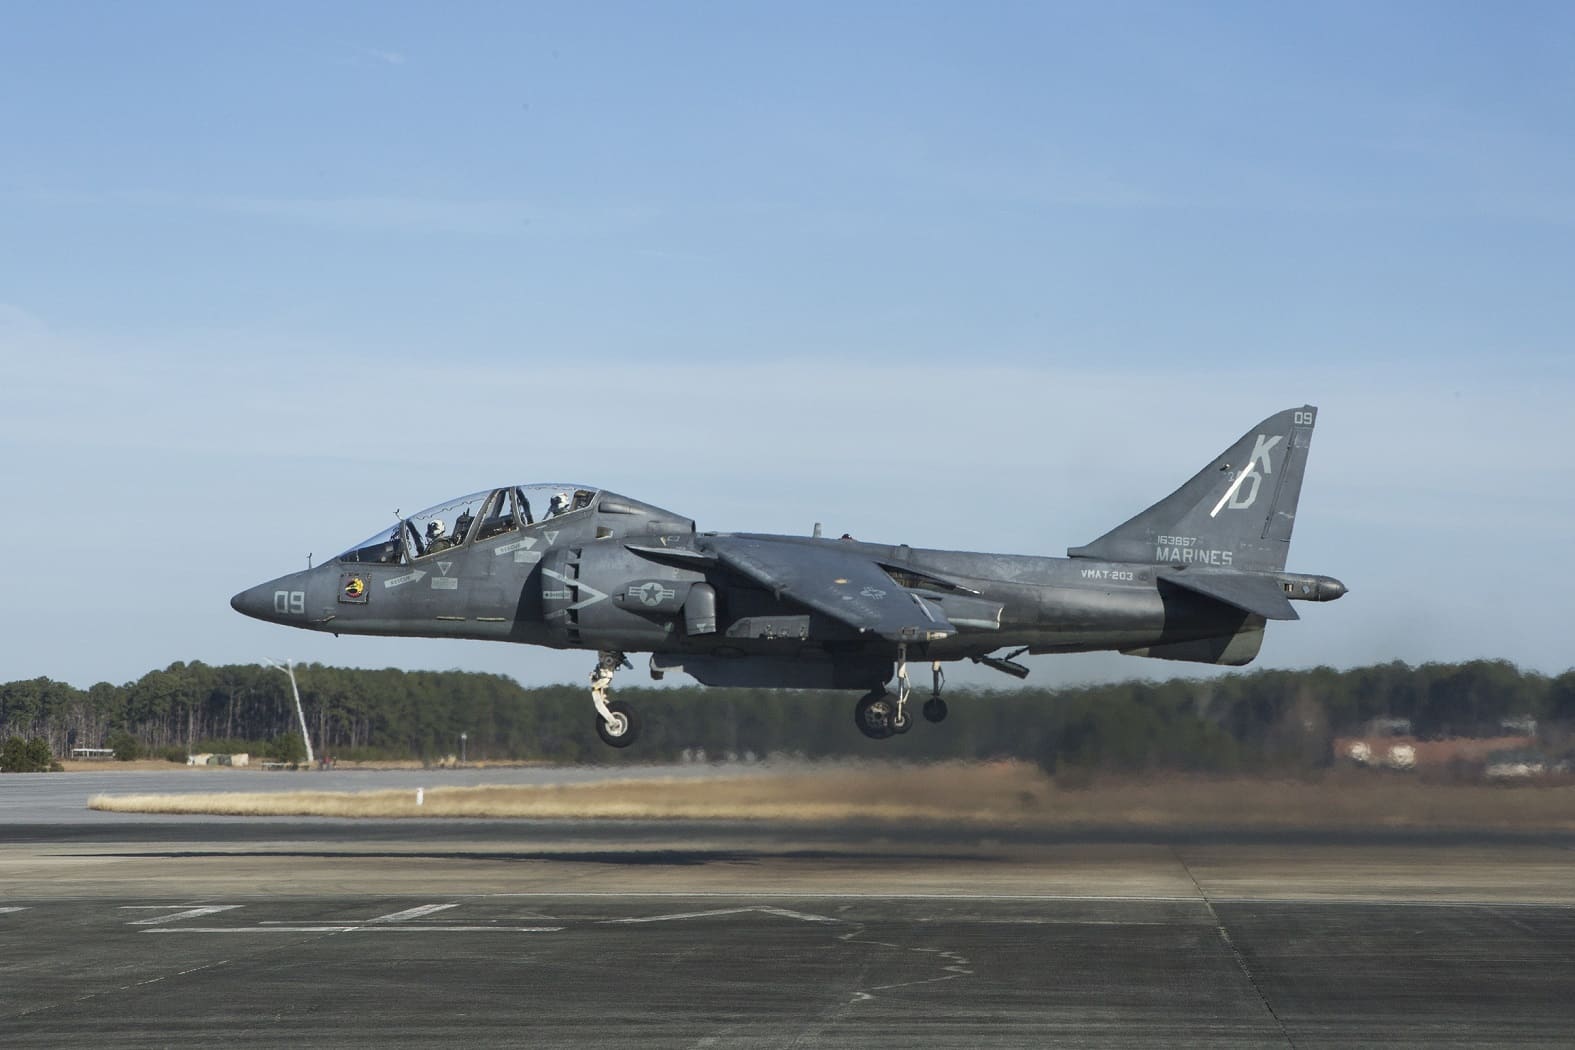 T/AV-8B Harrier II trainer